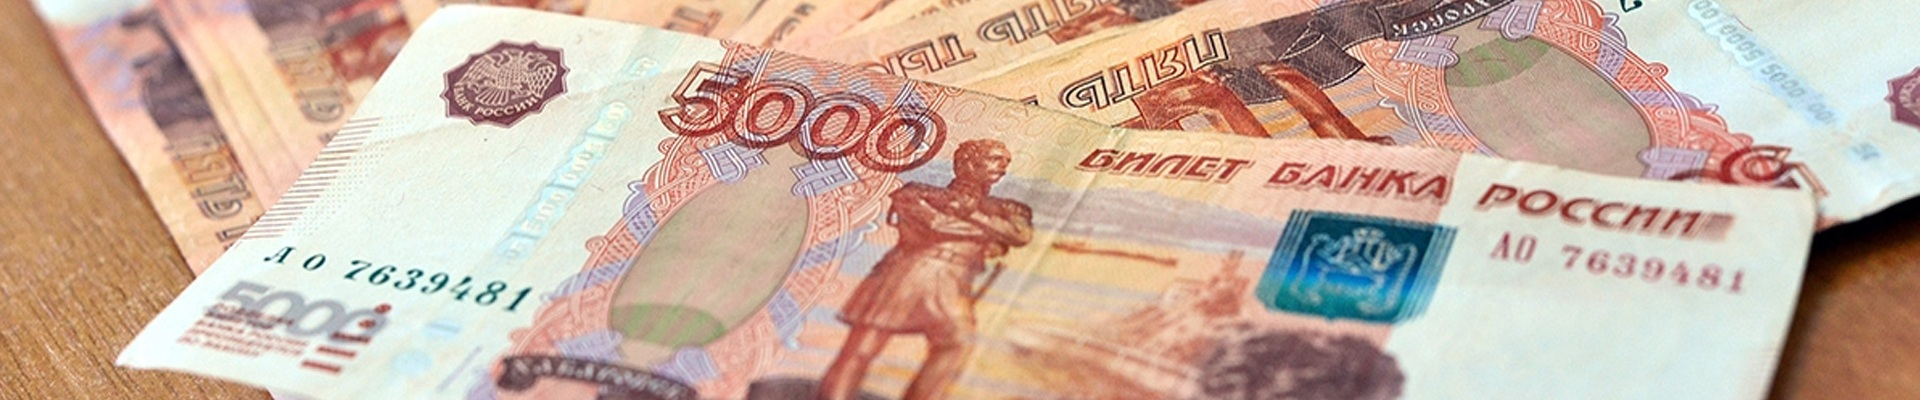 Газпромбанк объявляет о снижении процентных ставок для клиентов оформляющих потребительский кредит